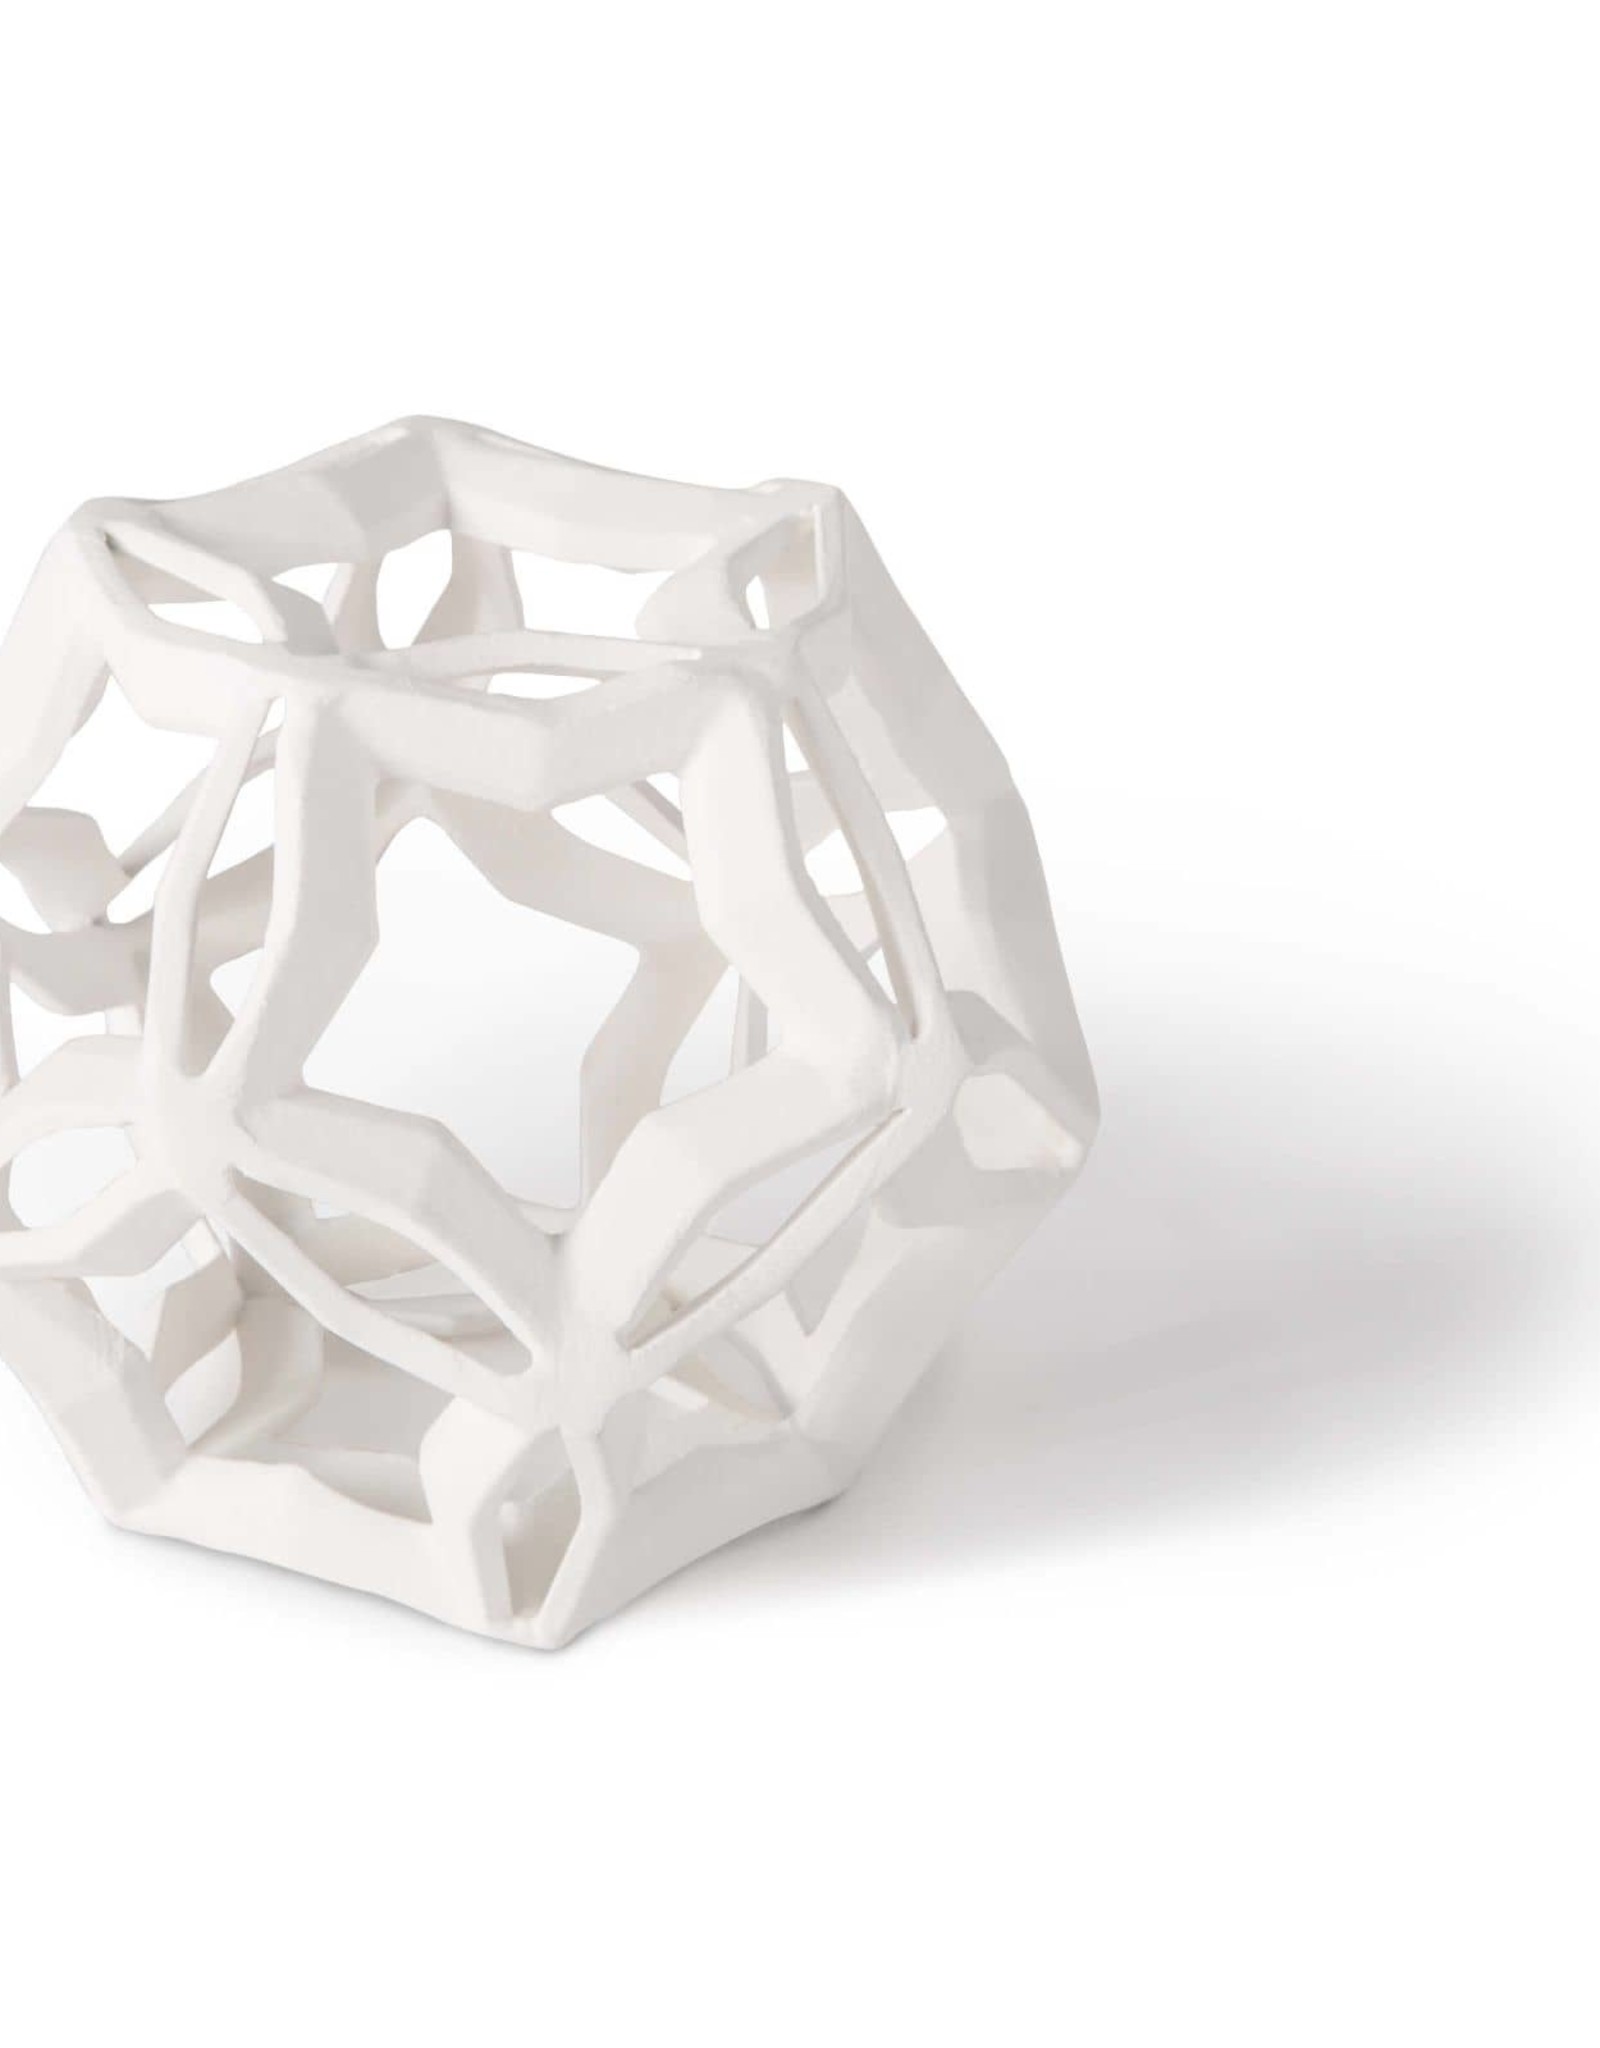 Regina Andrew Design Geometric Star Medium (White)